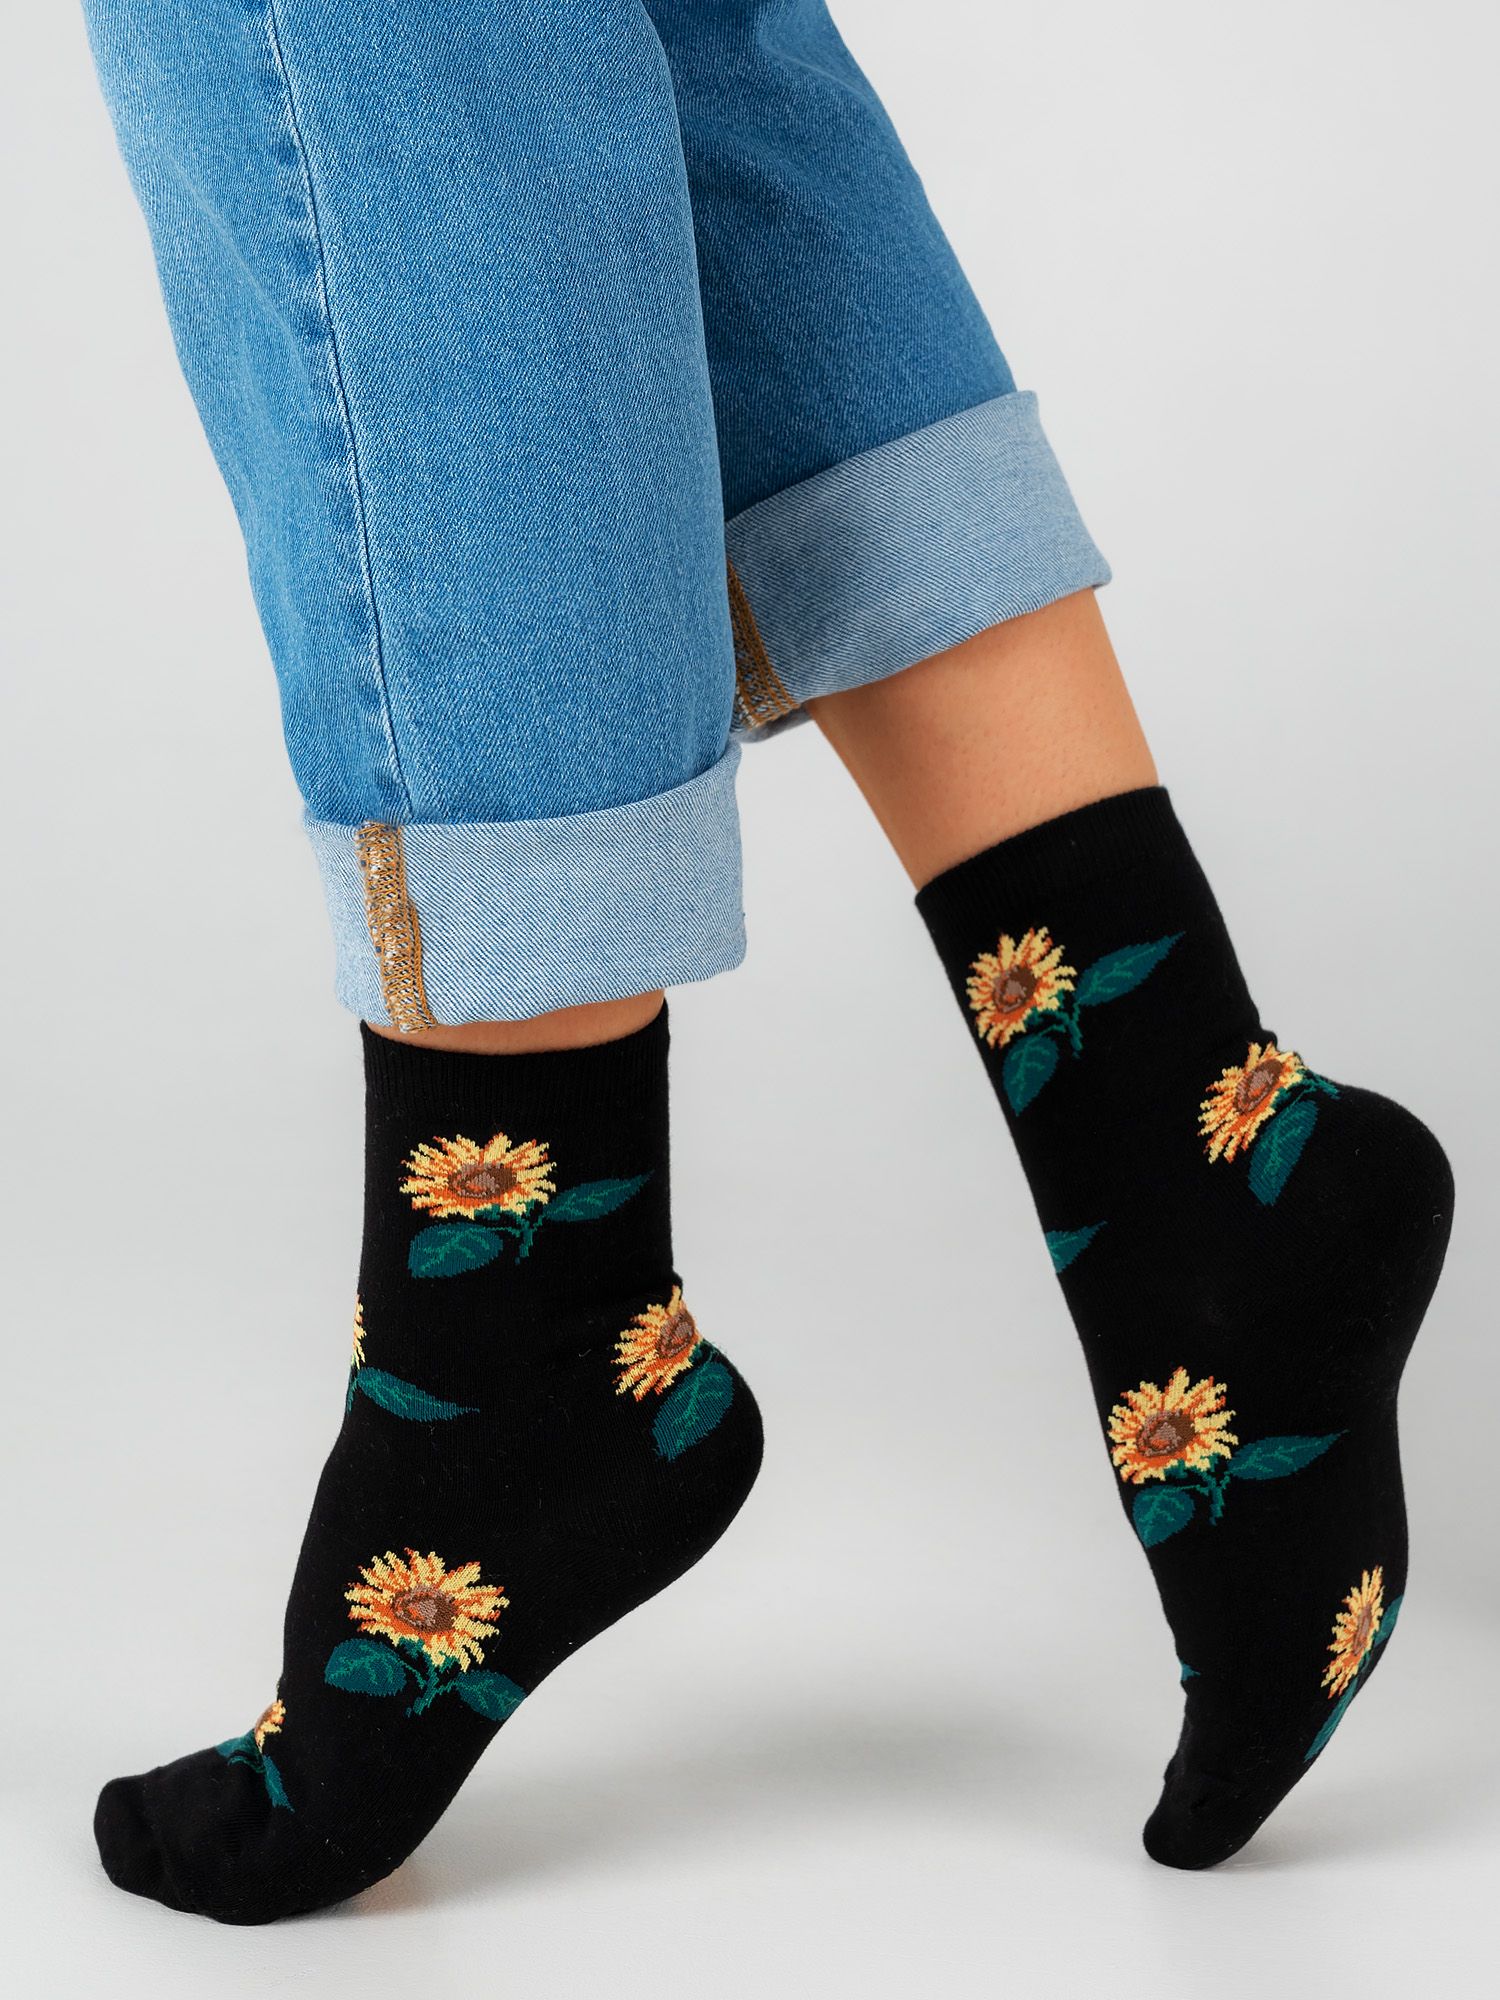 Just socks